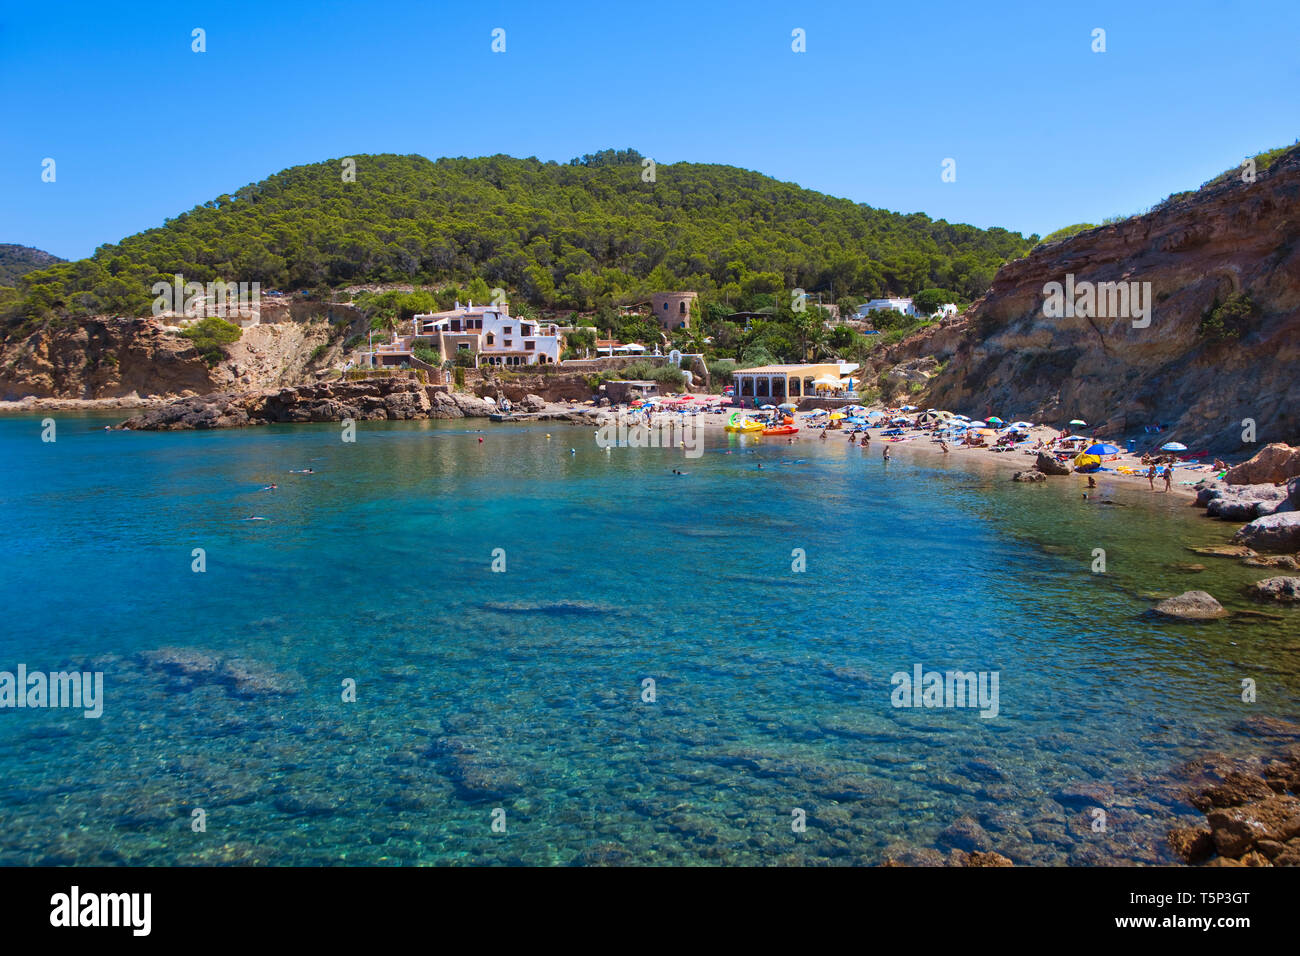 Cala Xarraca. Ibiza. Balearic Islands. Spain. Stock Photo